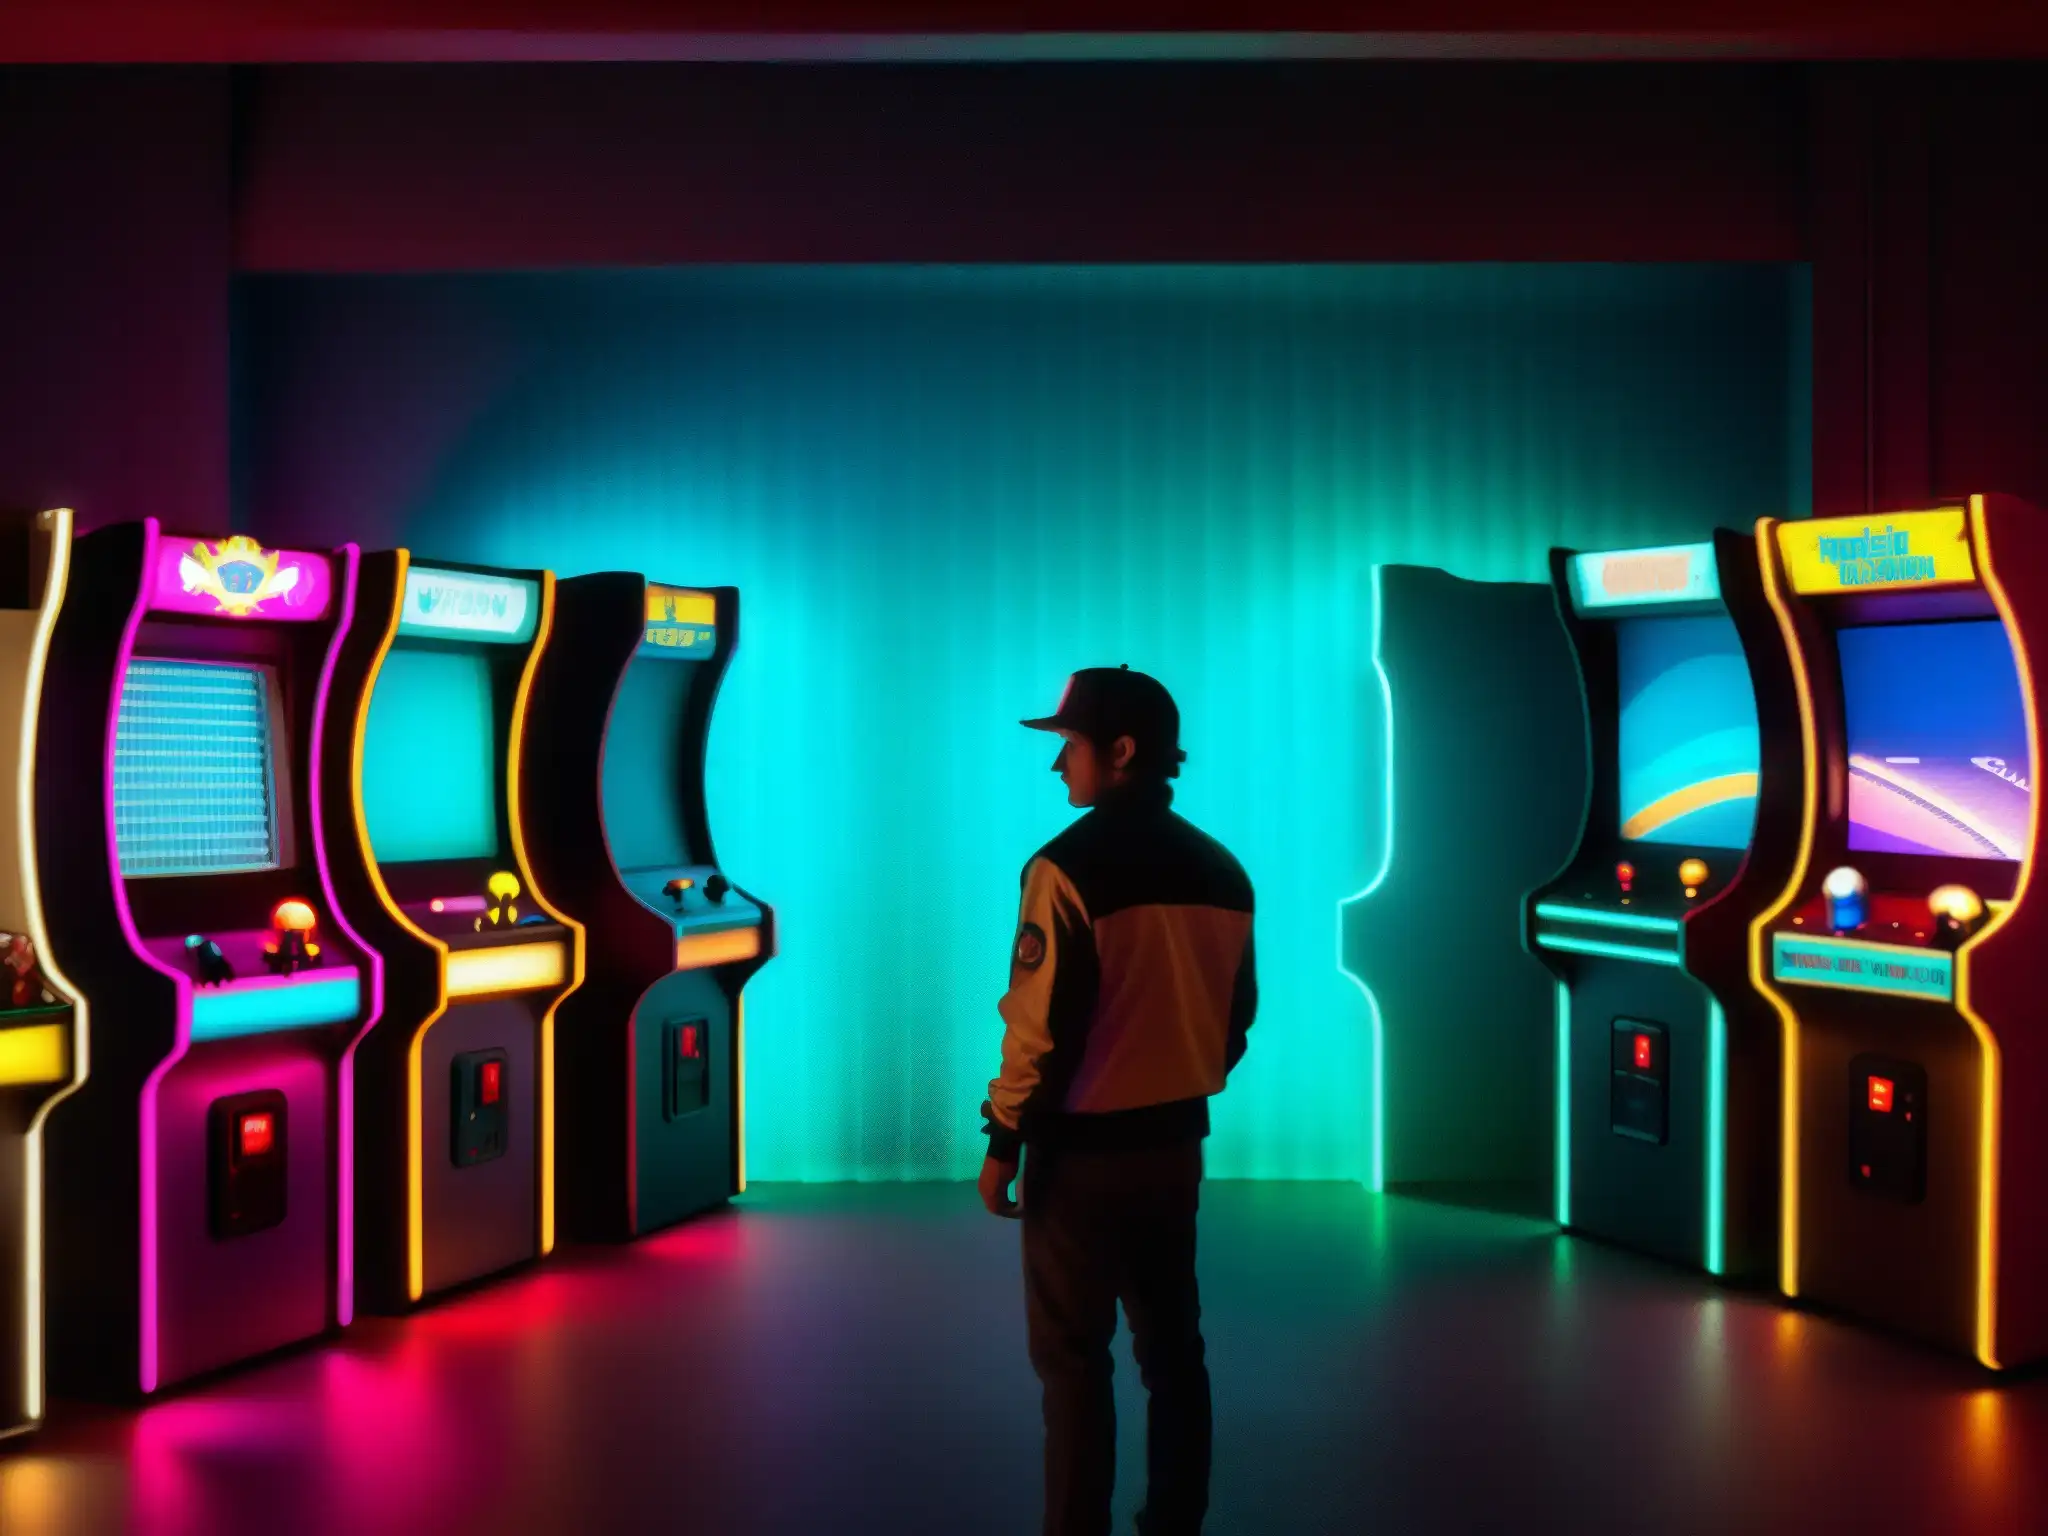 En una sala de juegos con luces tenues, una figura misteriosa se para frente a la máquina arcade Polybius